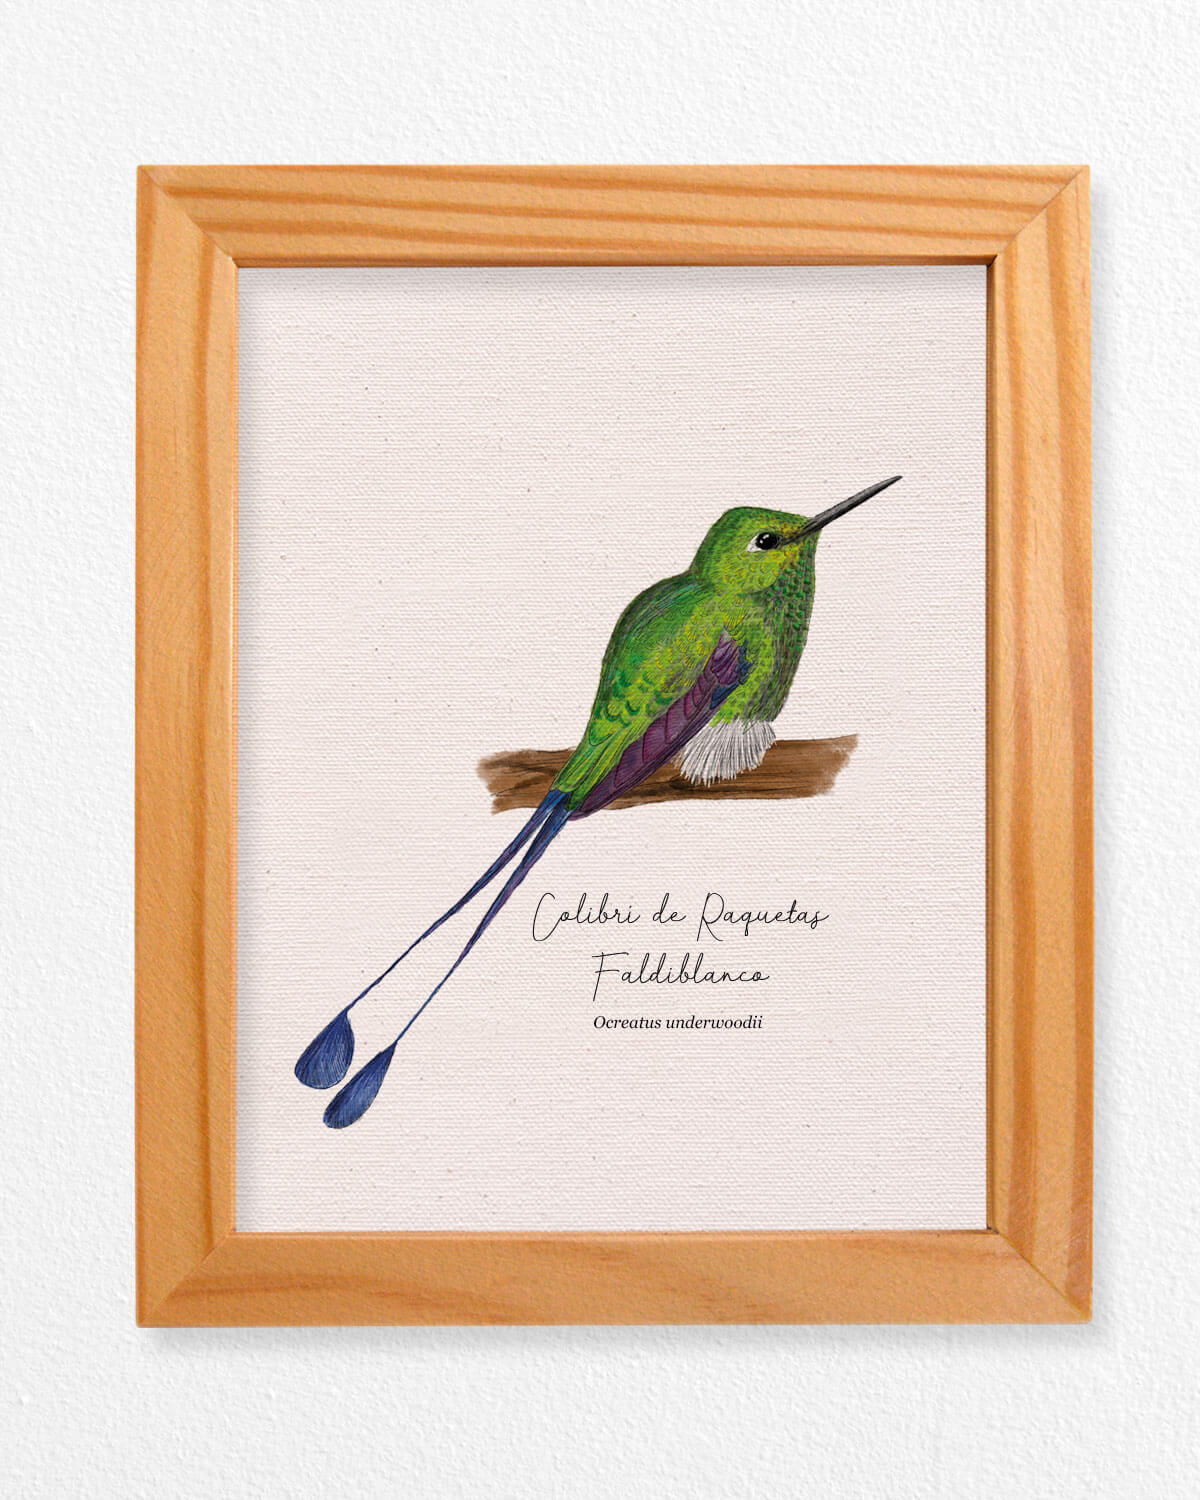 Colibri De Raquetas ave colombia aves de colombia cuadros regalos souvenirs colombianos Colombia arte artesanías mapas postales decoracion